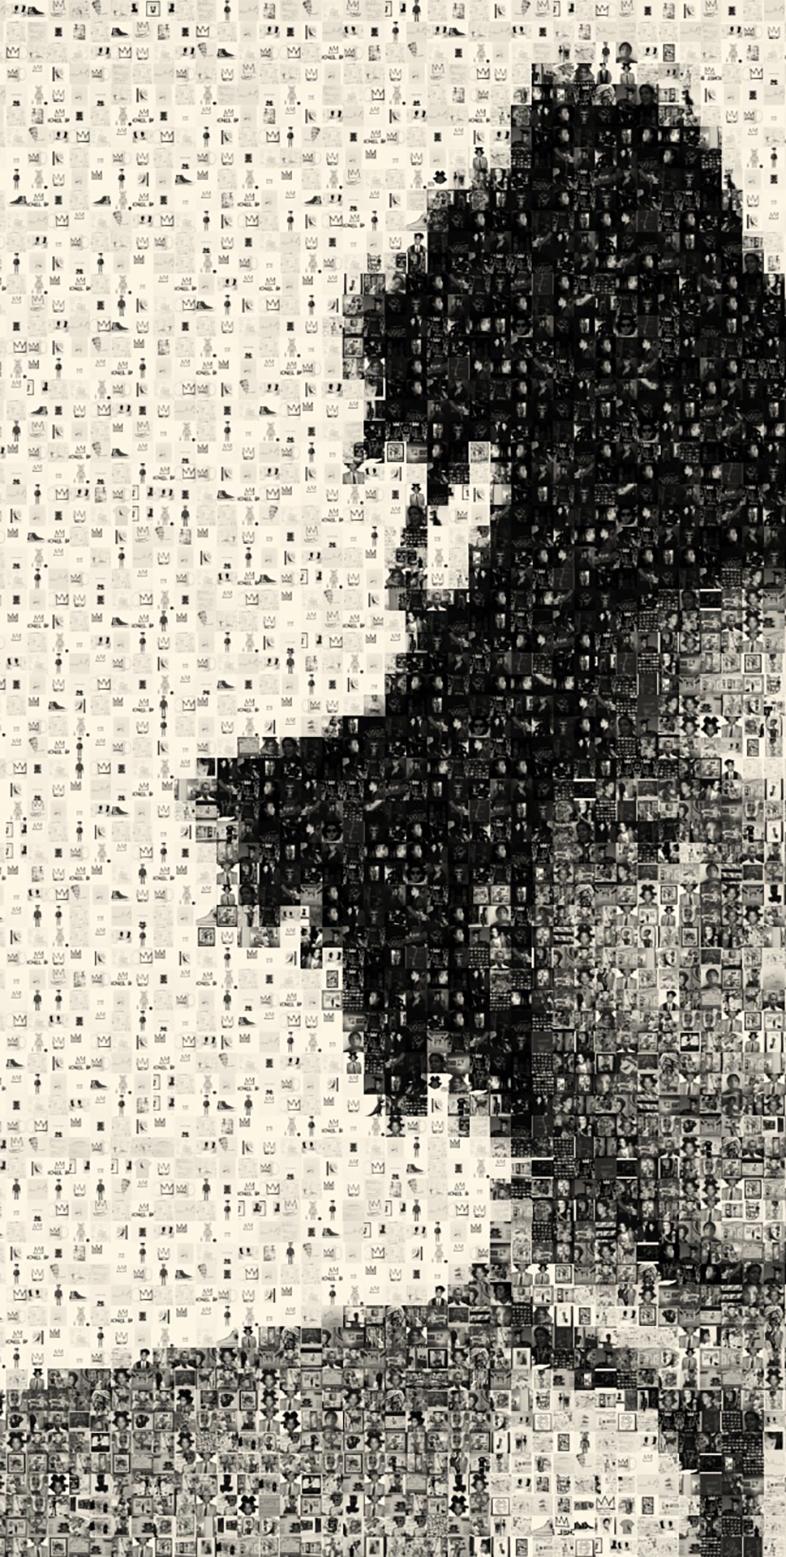 36x48 Jean Michel Basquiat Exhibition Print  PHOTOMOSAIC PHOTOGRAPHY Pop Art - Photograph by Destro